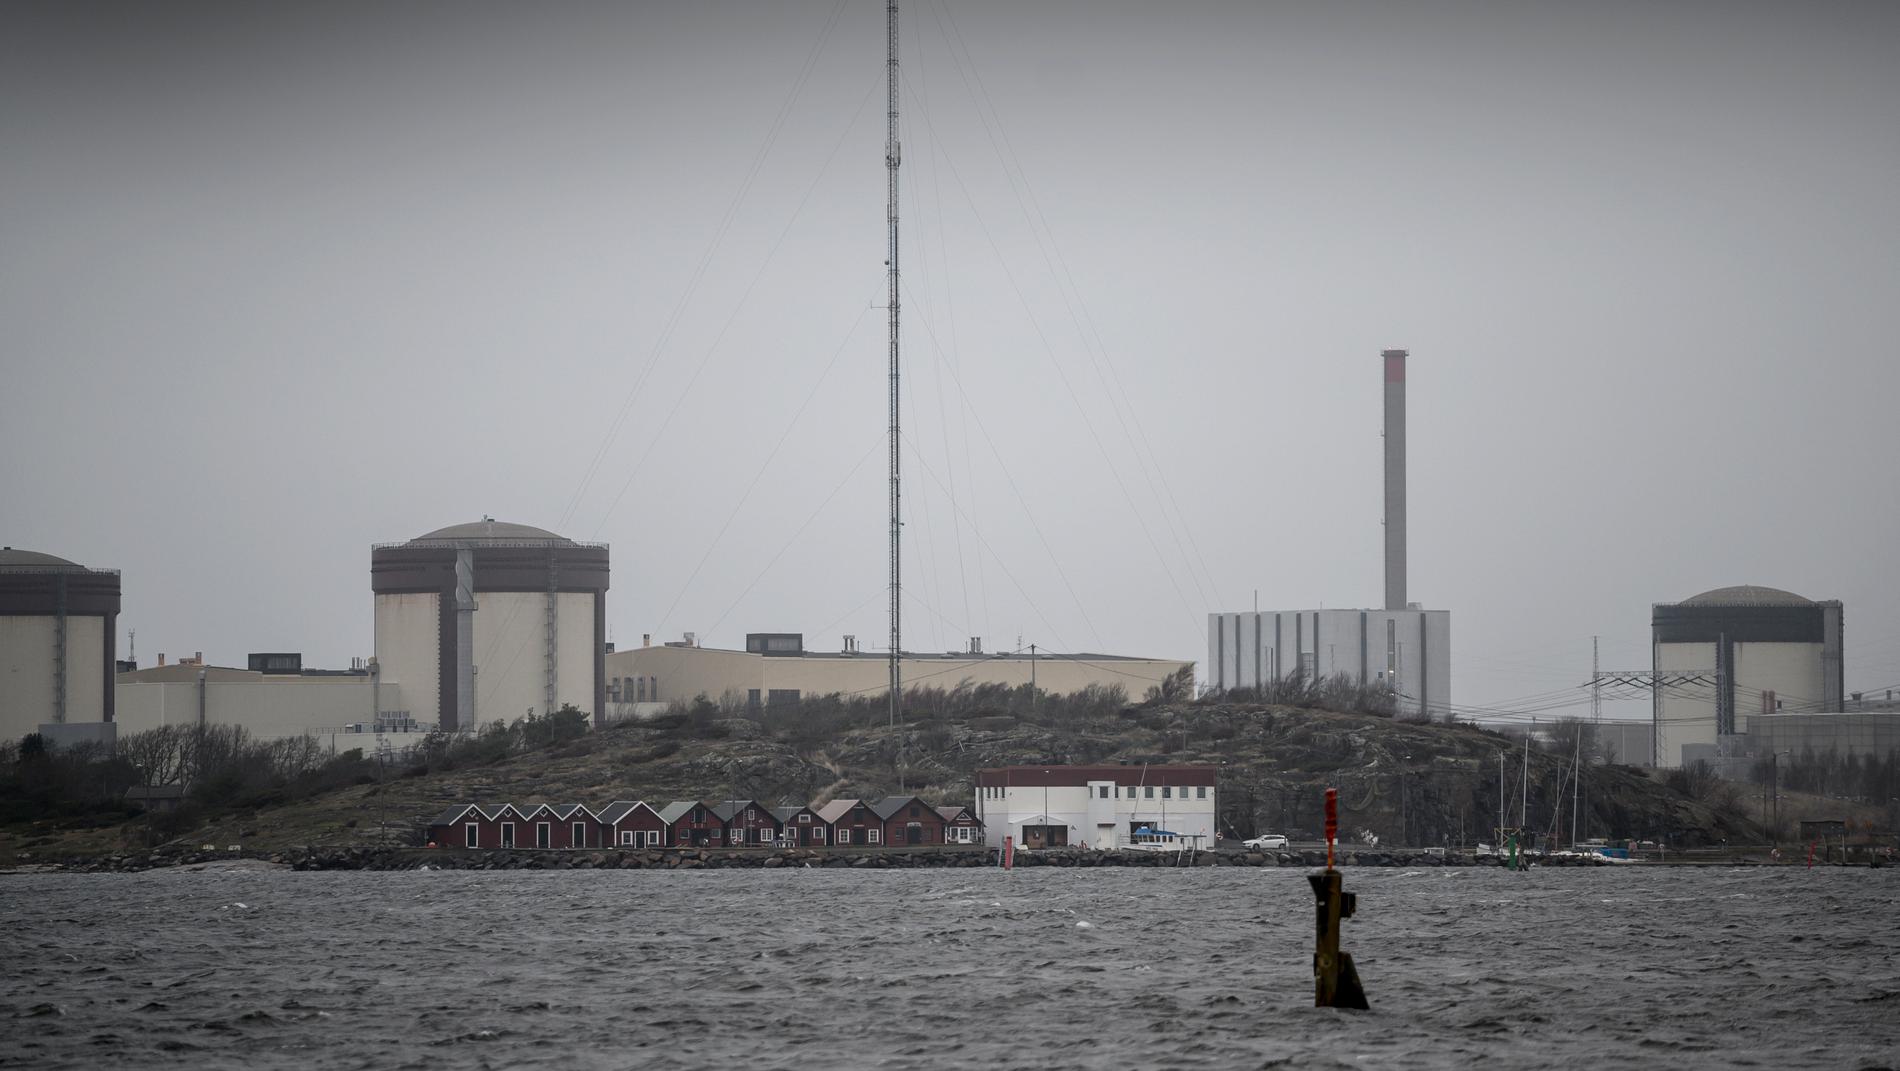 Ringhals kärnkraftverk, vid Kattegatt norr om Varberg. Från vänster ses reaktor 3, reaktor 4, reaktor 1 (fyrkantig) och reaktor 2. Reaktorerna 1 och 2 är permanent stängda. Arkivbild.